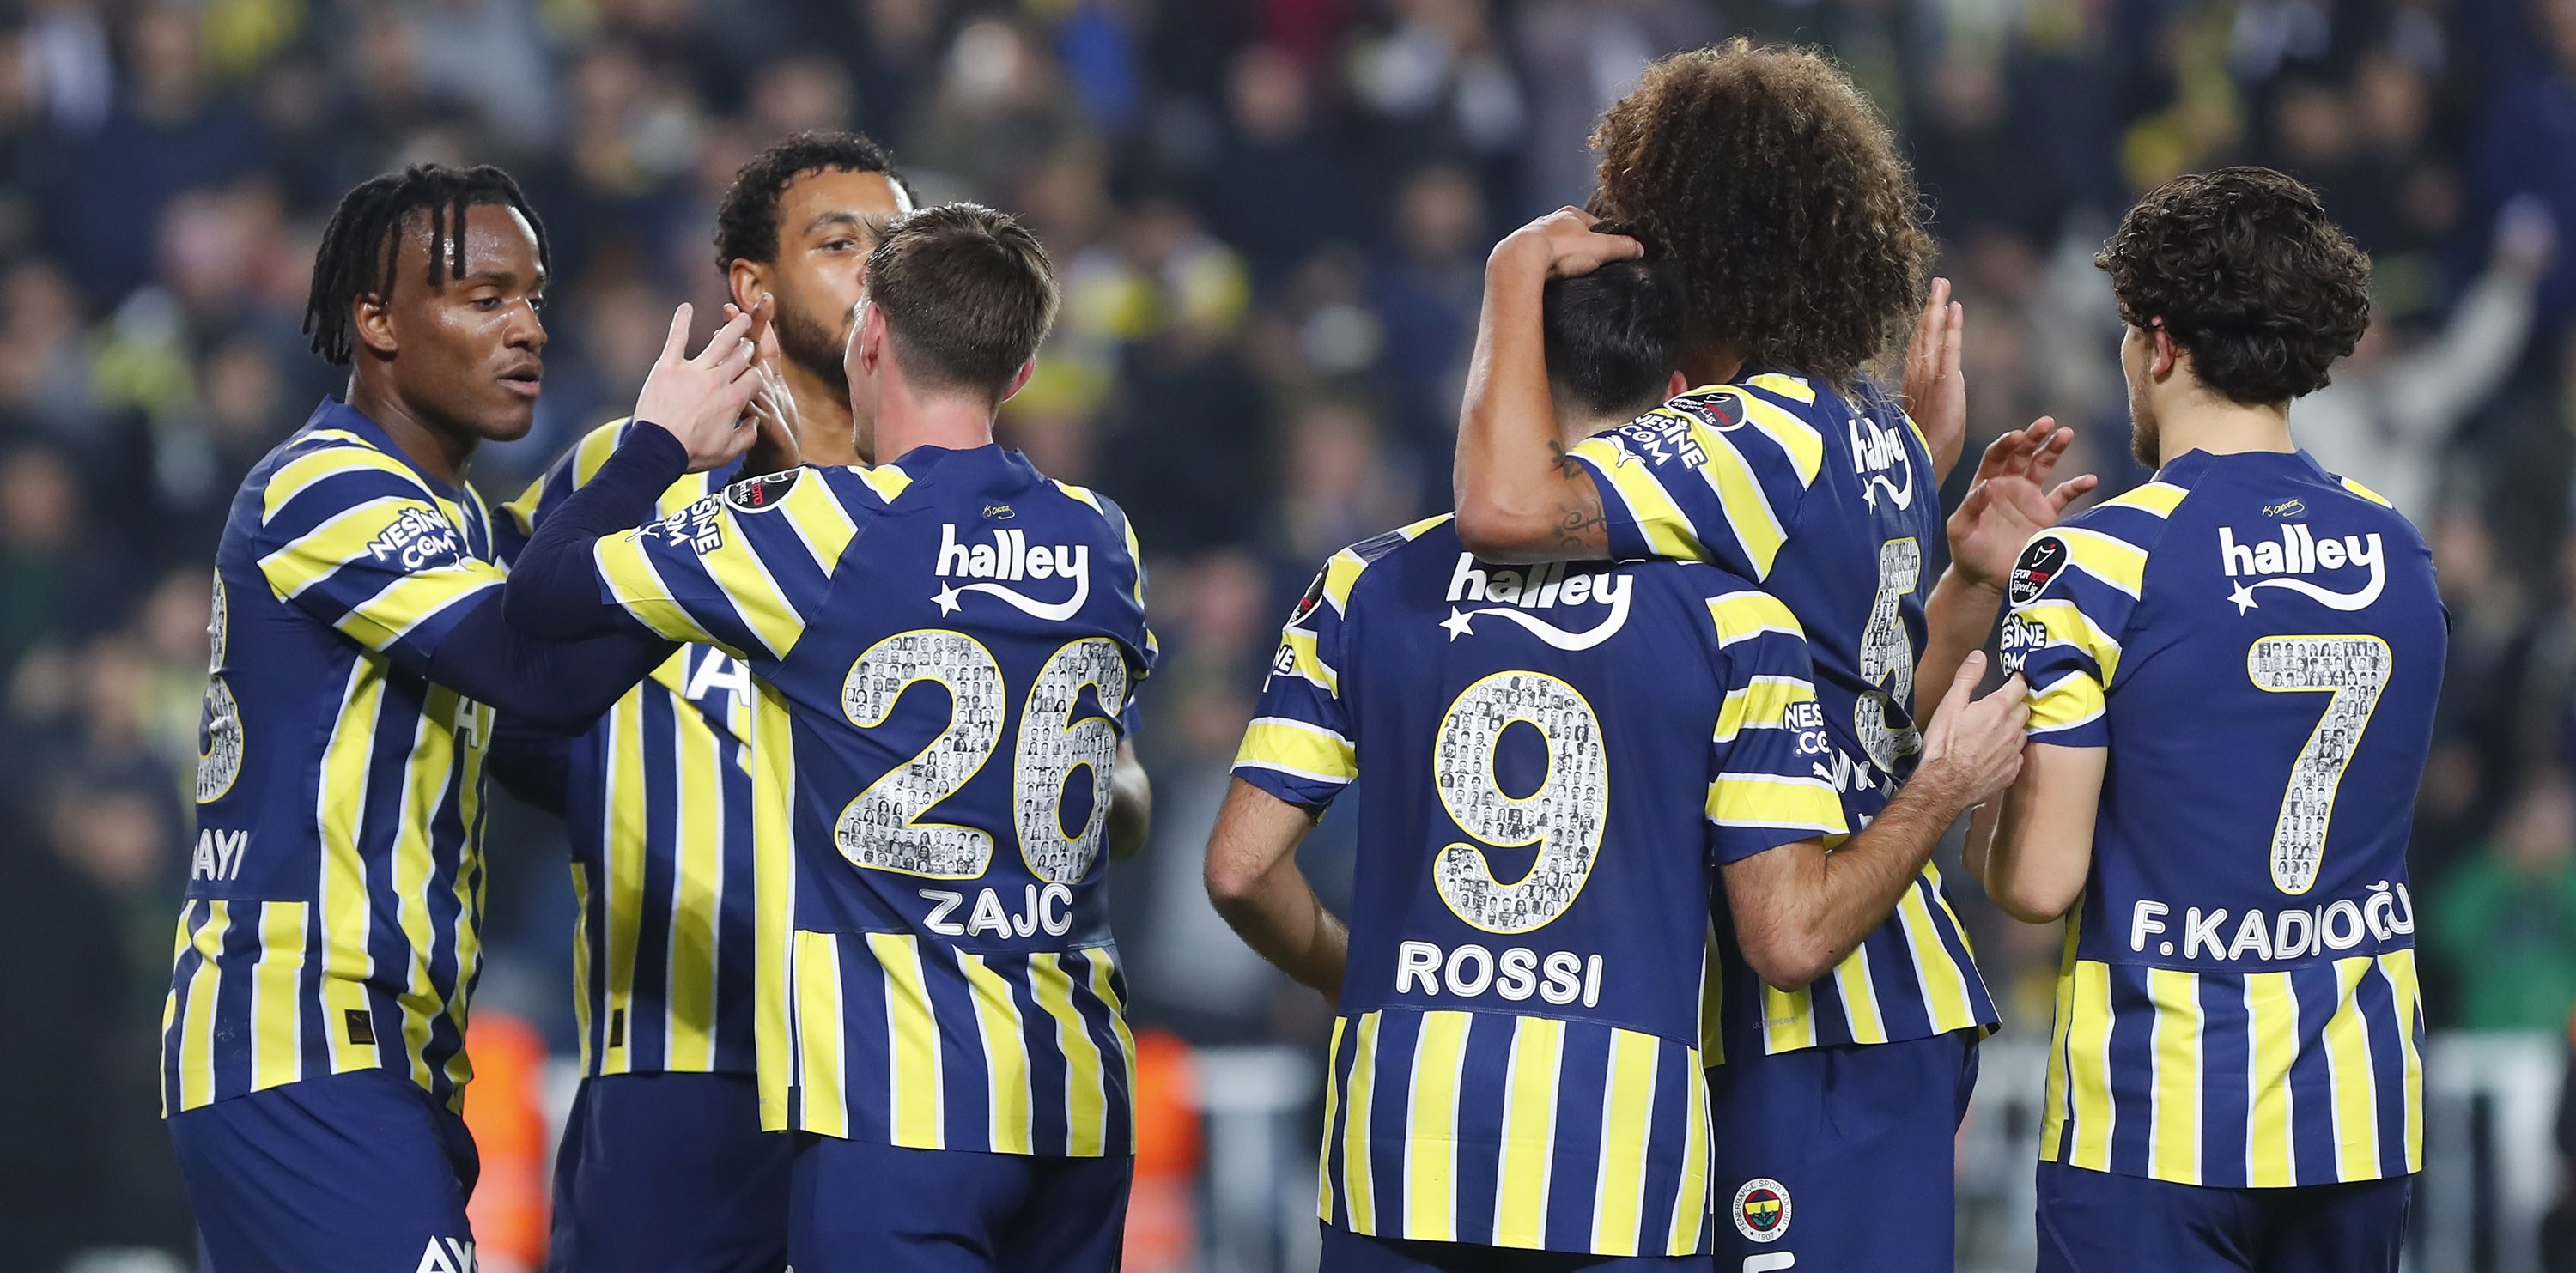 Fenerbahçe, Hatayspor Maçında Sezonun Rekorunu Kırdı